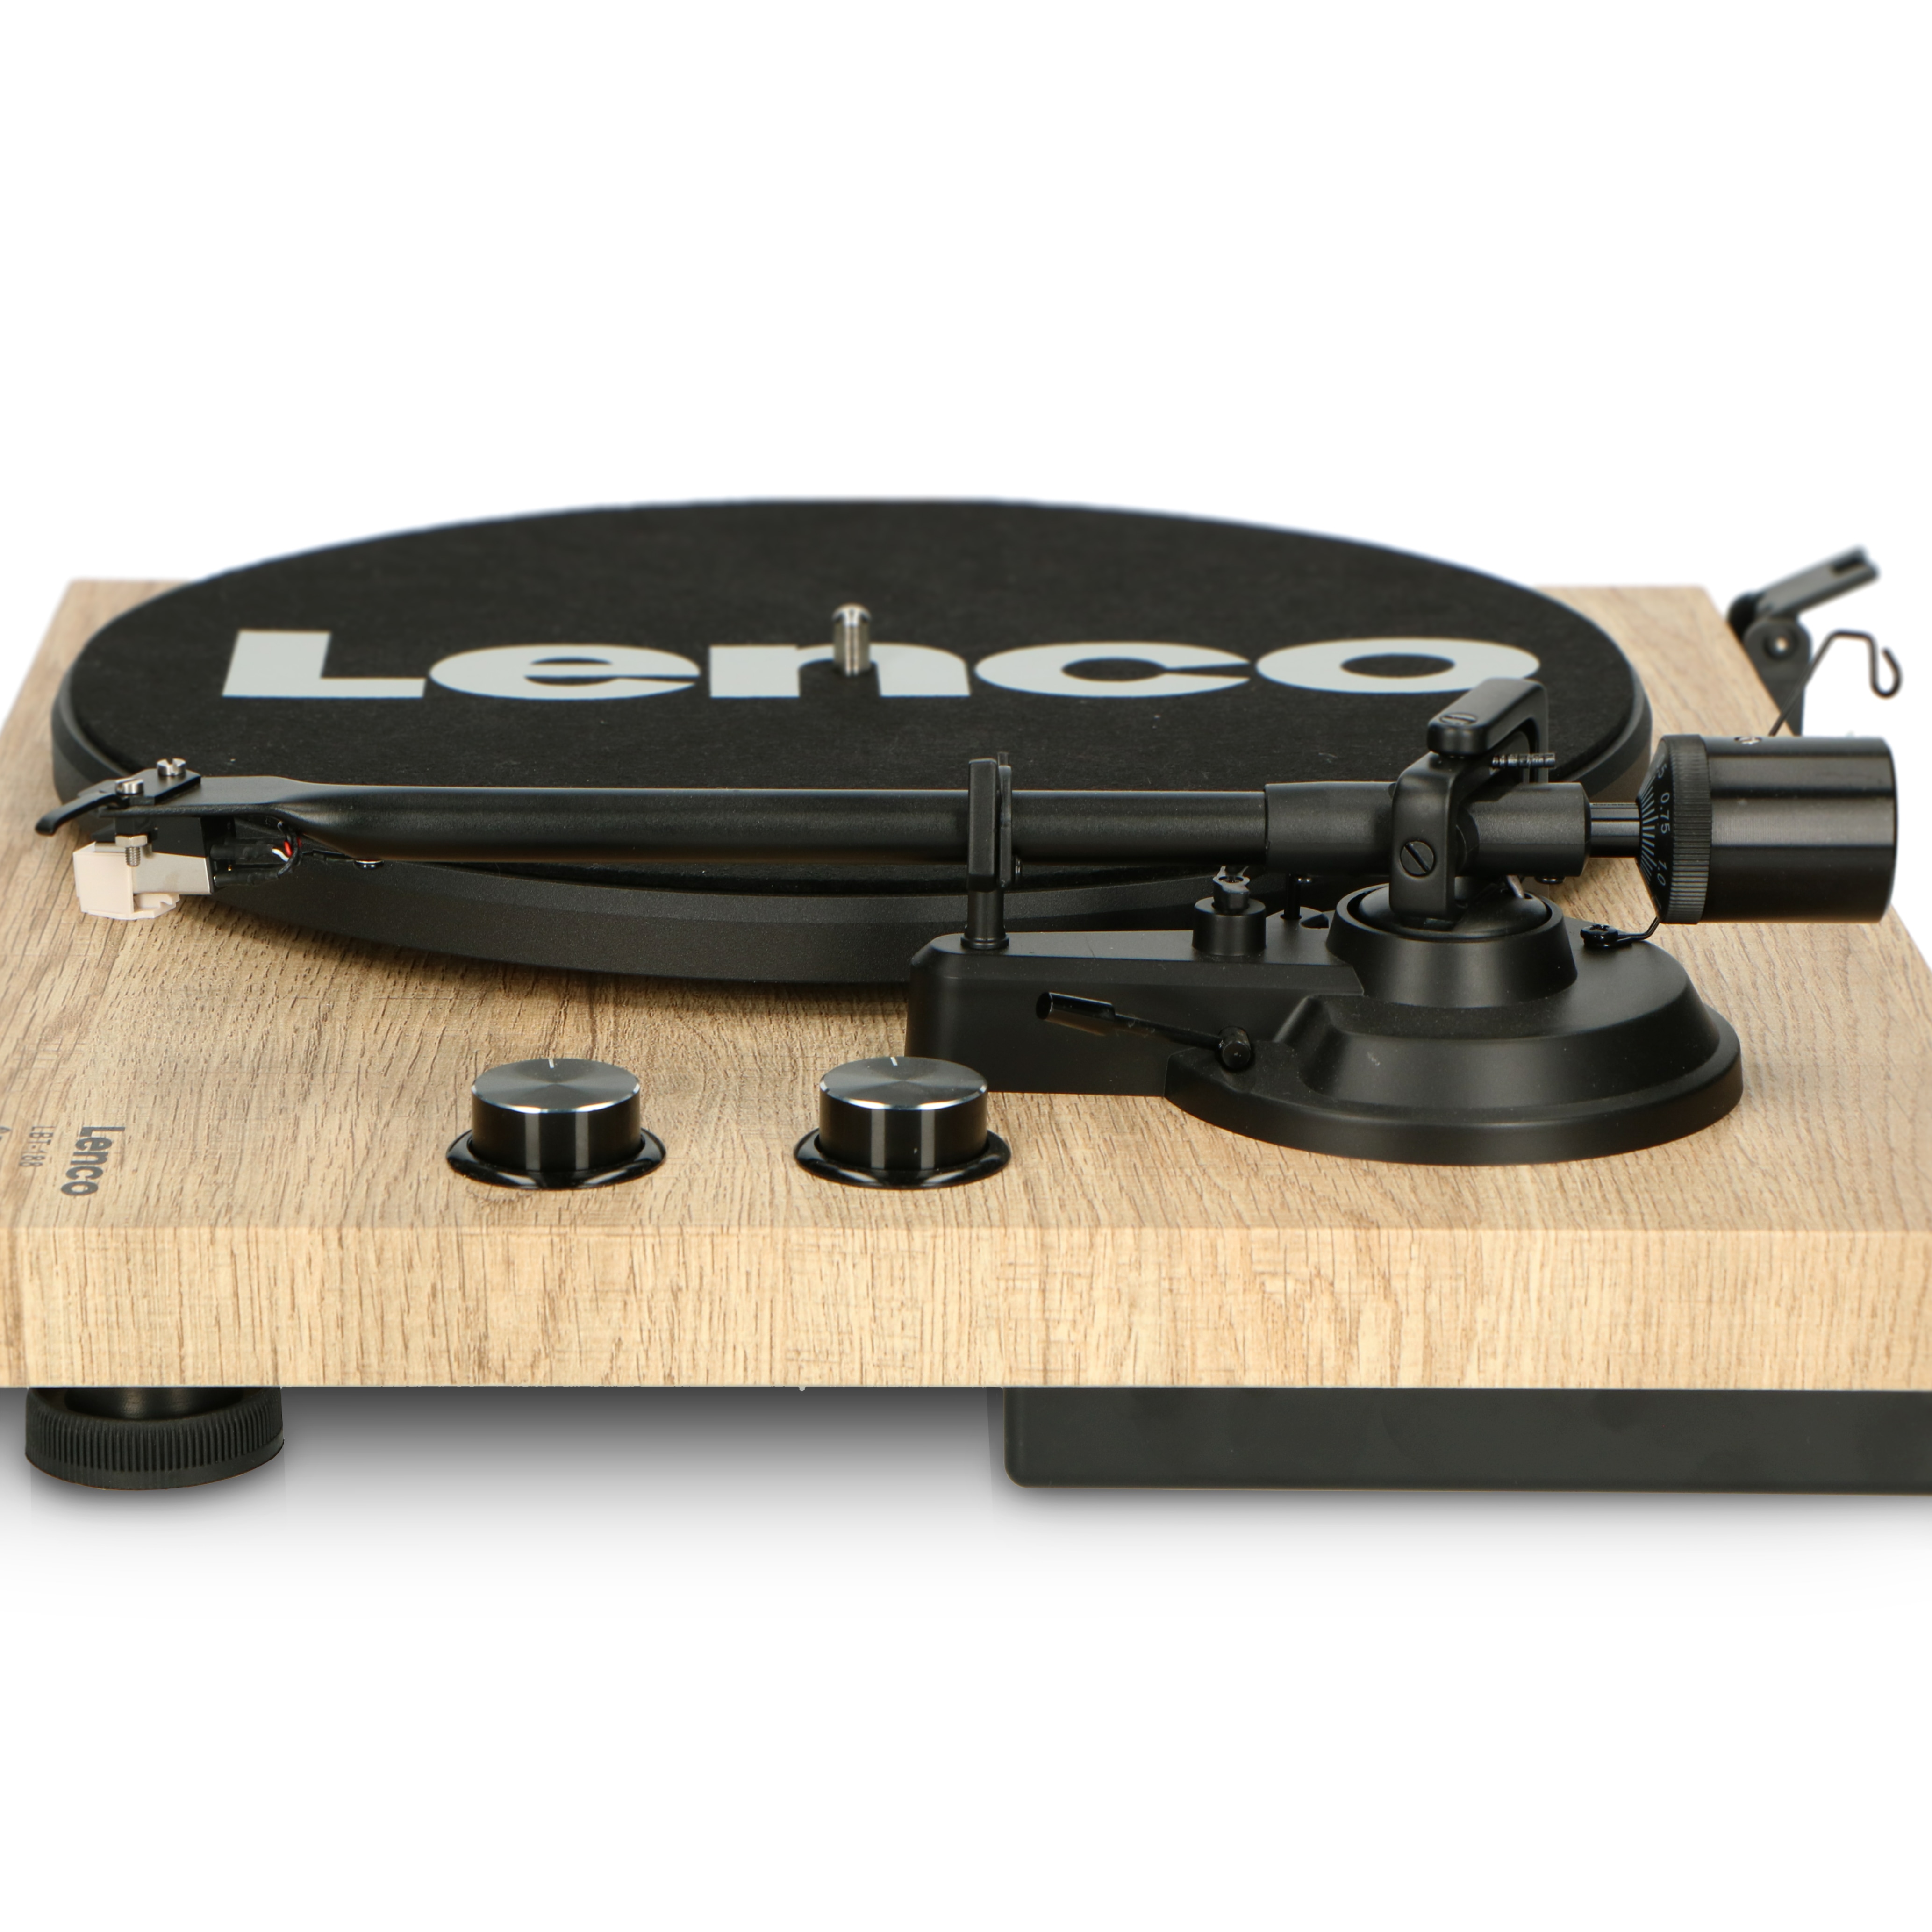 Lenco LBT-188PI - Plattenspieler mit Riemenantrieb und Bluetooth -  Anti-Skating - Holz online kaufen bei Netto | Plattenspieler